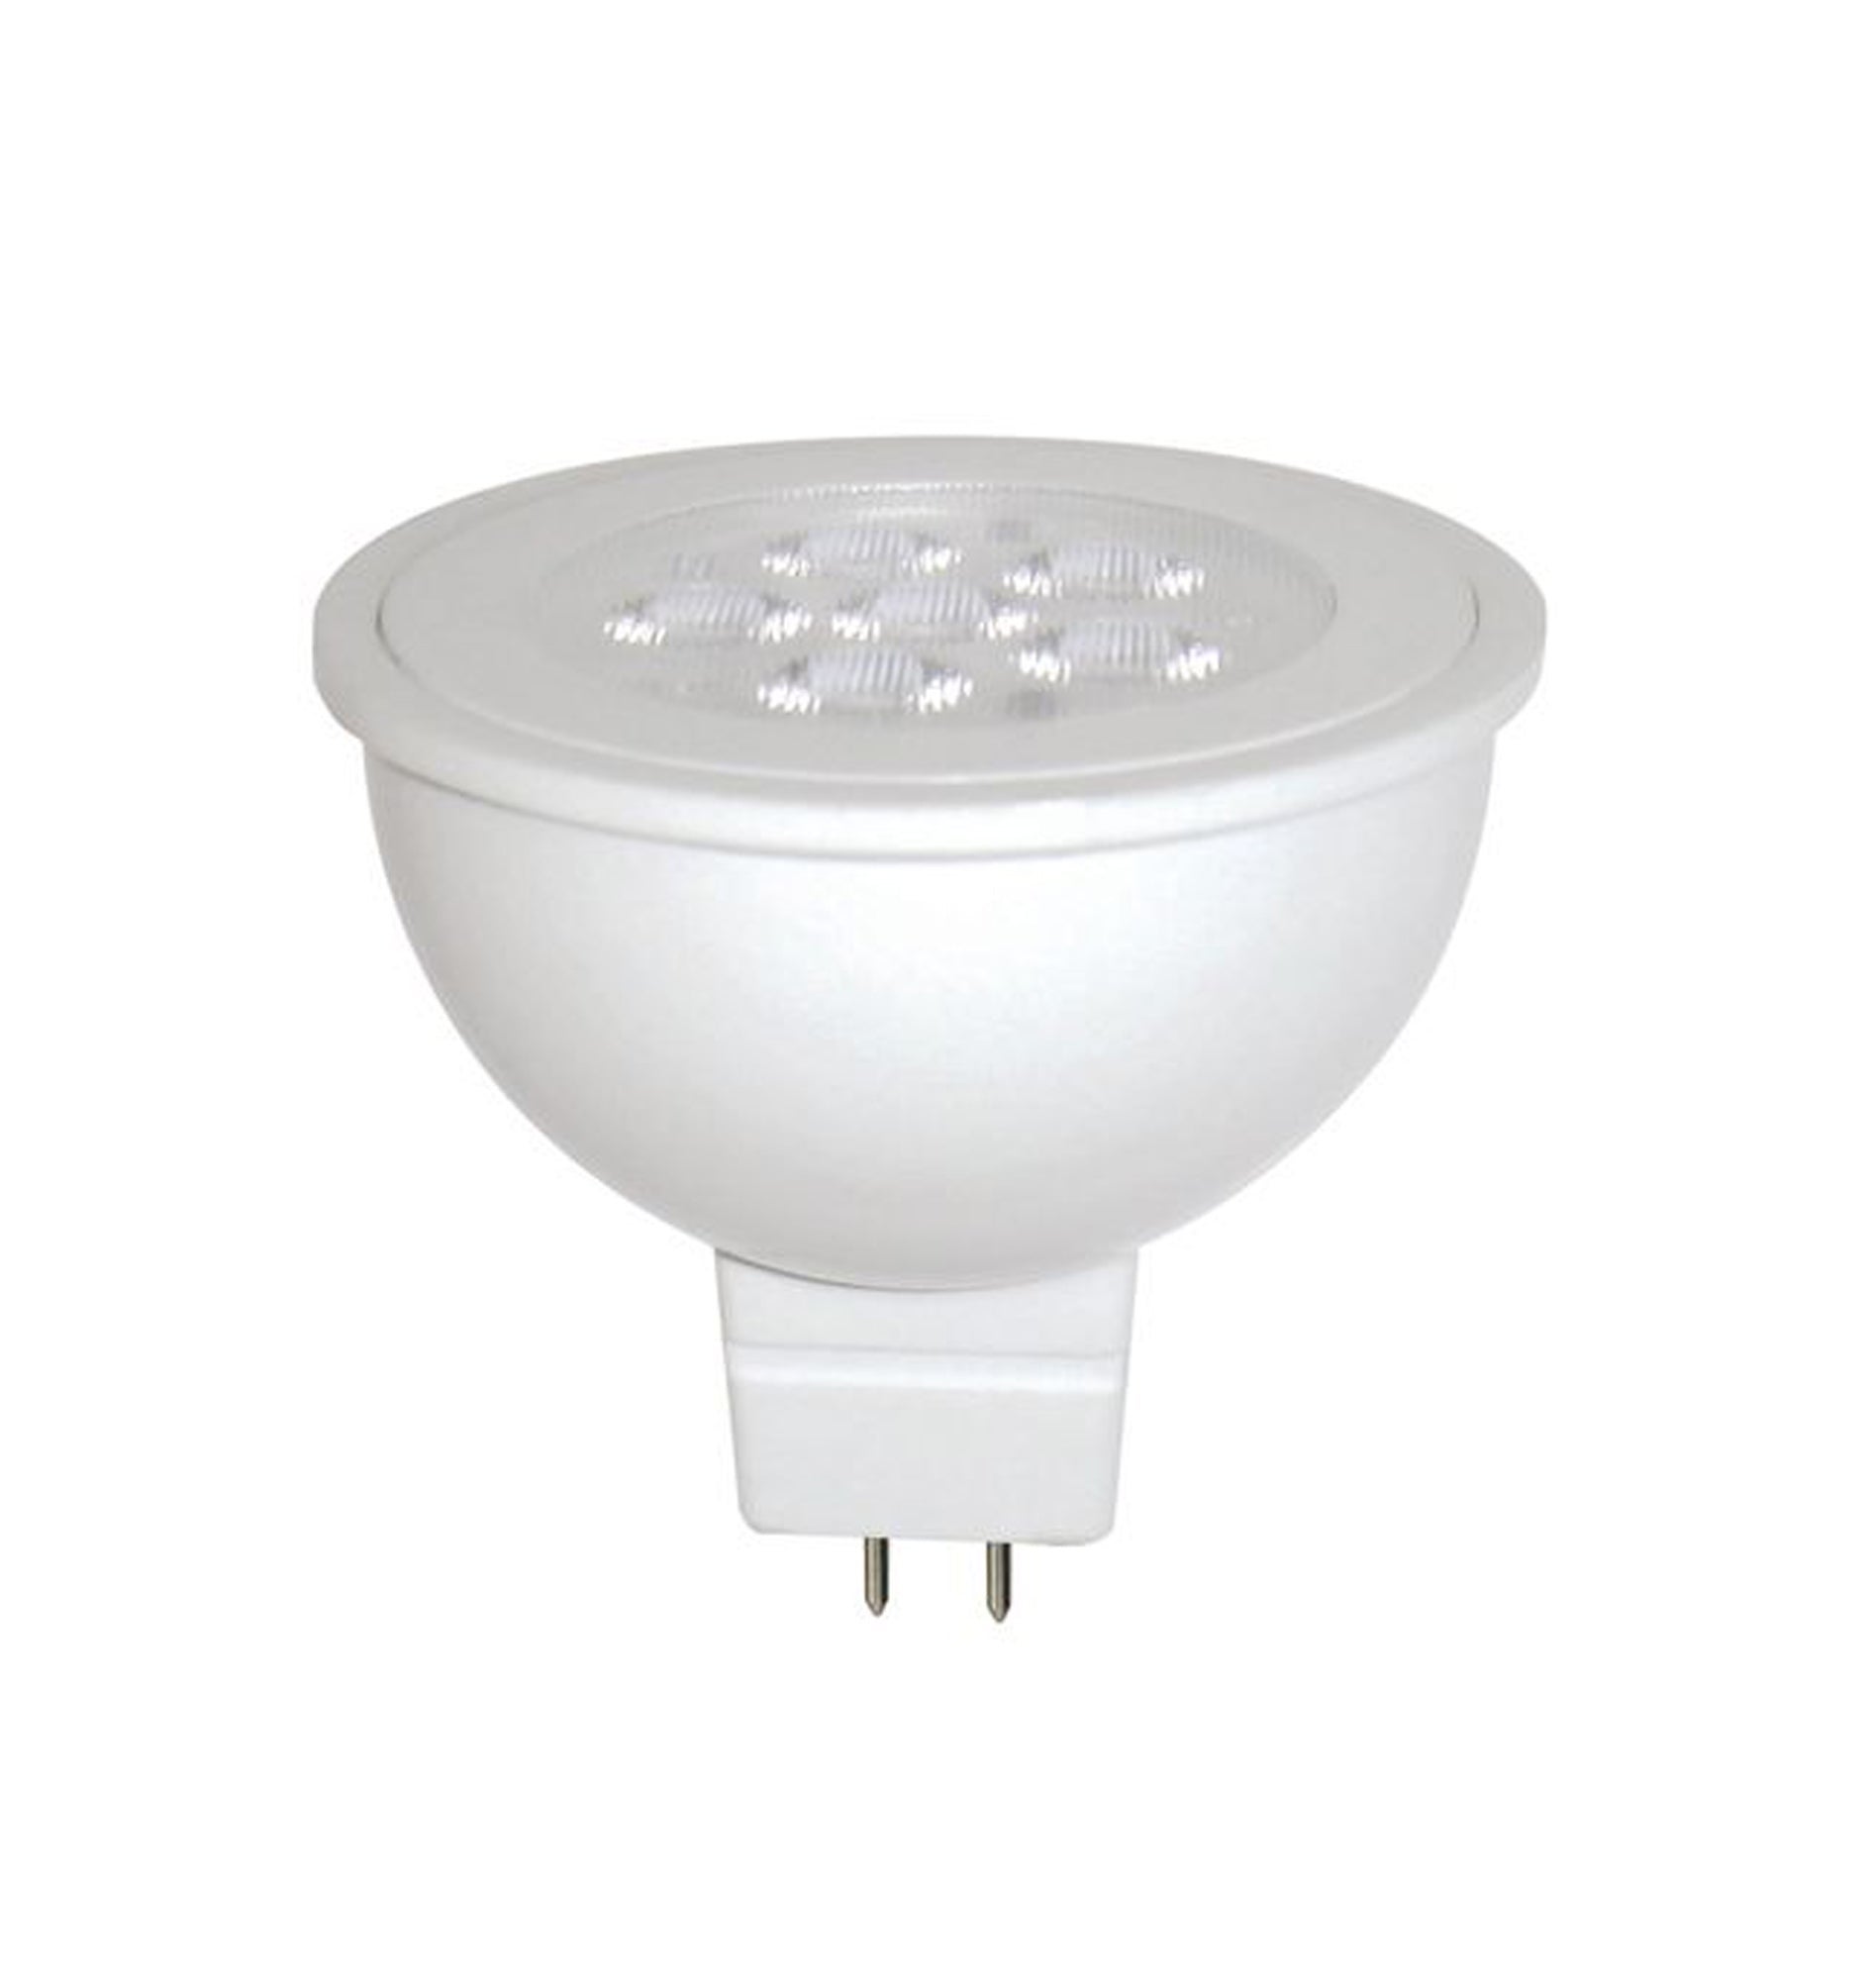 MR16 LED Globes (6W)